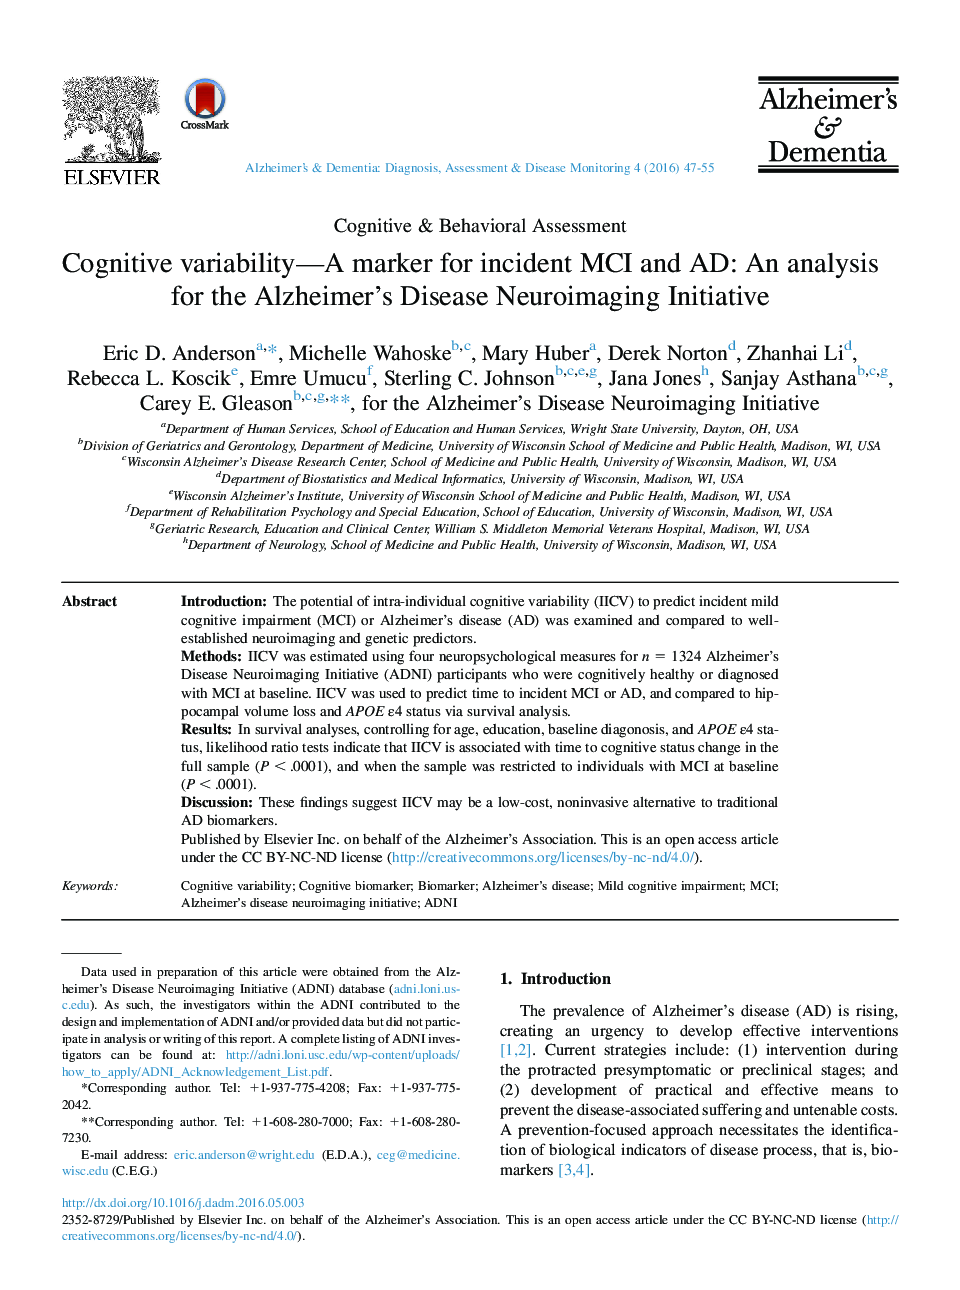 تنوع شناختی - نشانگر برای MCI و AD حادثه: یک تجزیه و تحلیل برای طرح ابتکاری تصویربرداری از بیماری آلزایمر